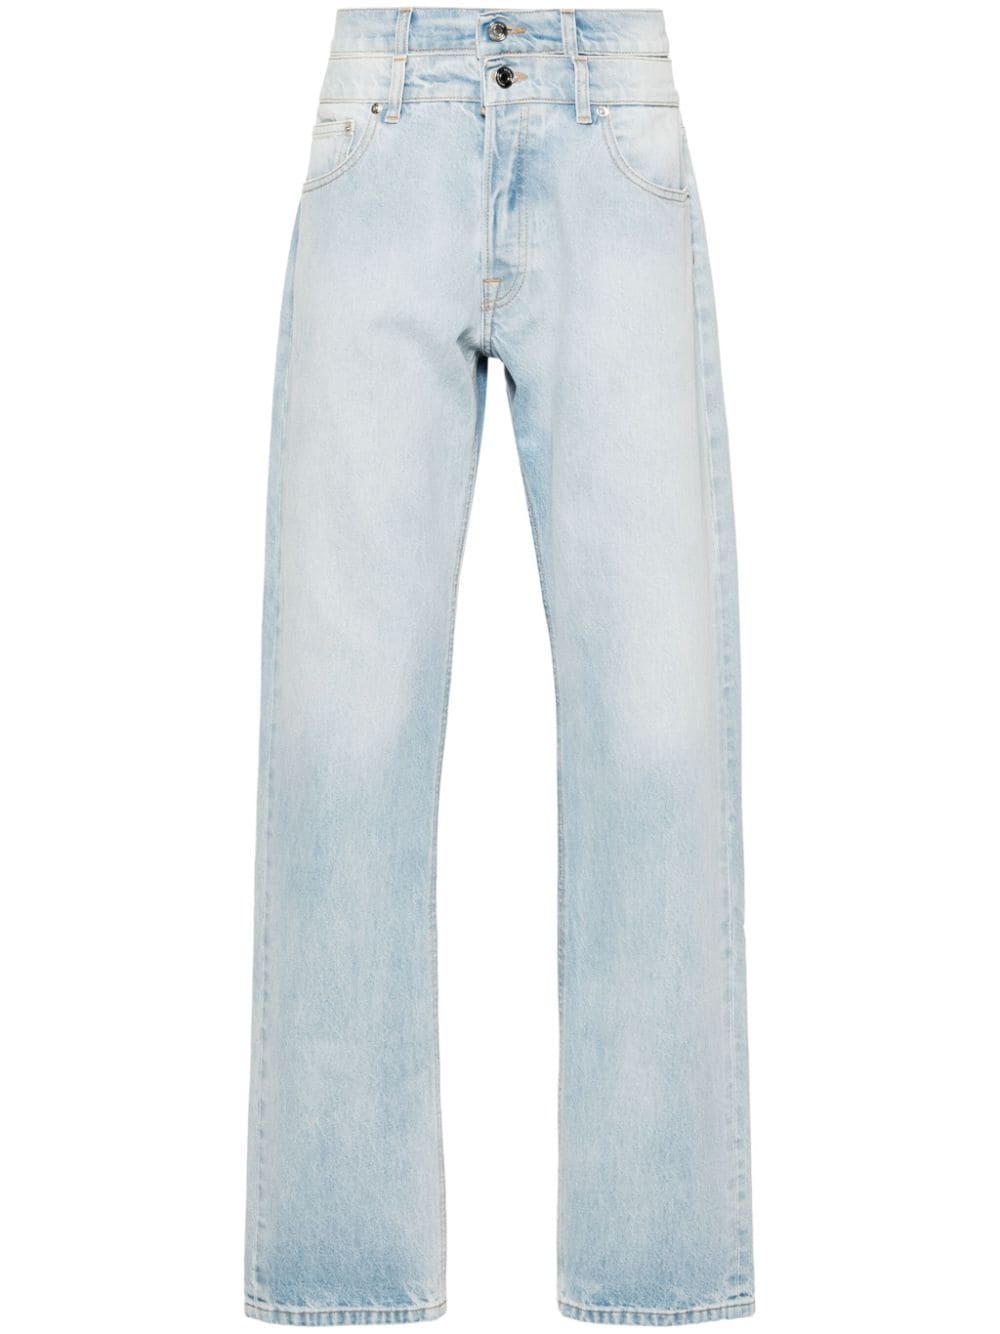 double-waistband straight-leg jeans